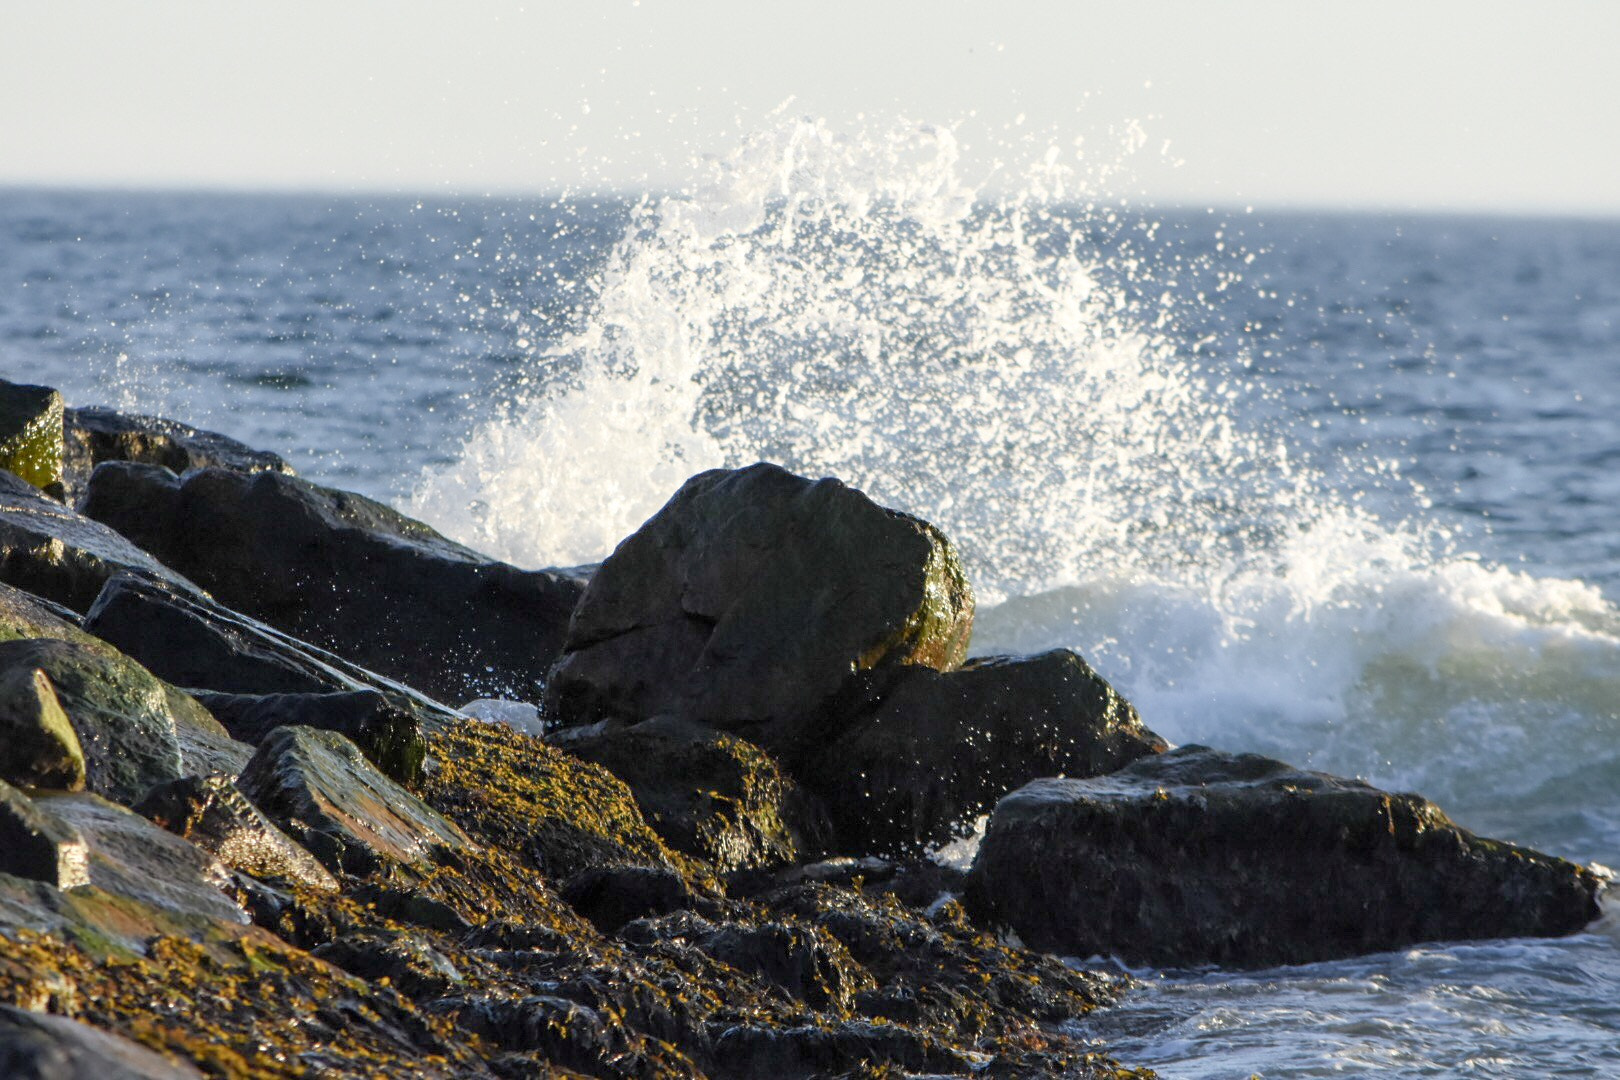 Nikon AF-S DX Nikkor 55-300mm F4.5-5.6G ED VR sample photo. Water crashing on rocks photography